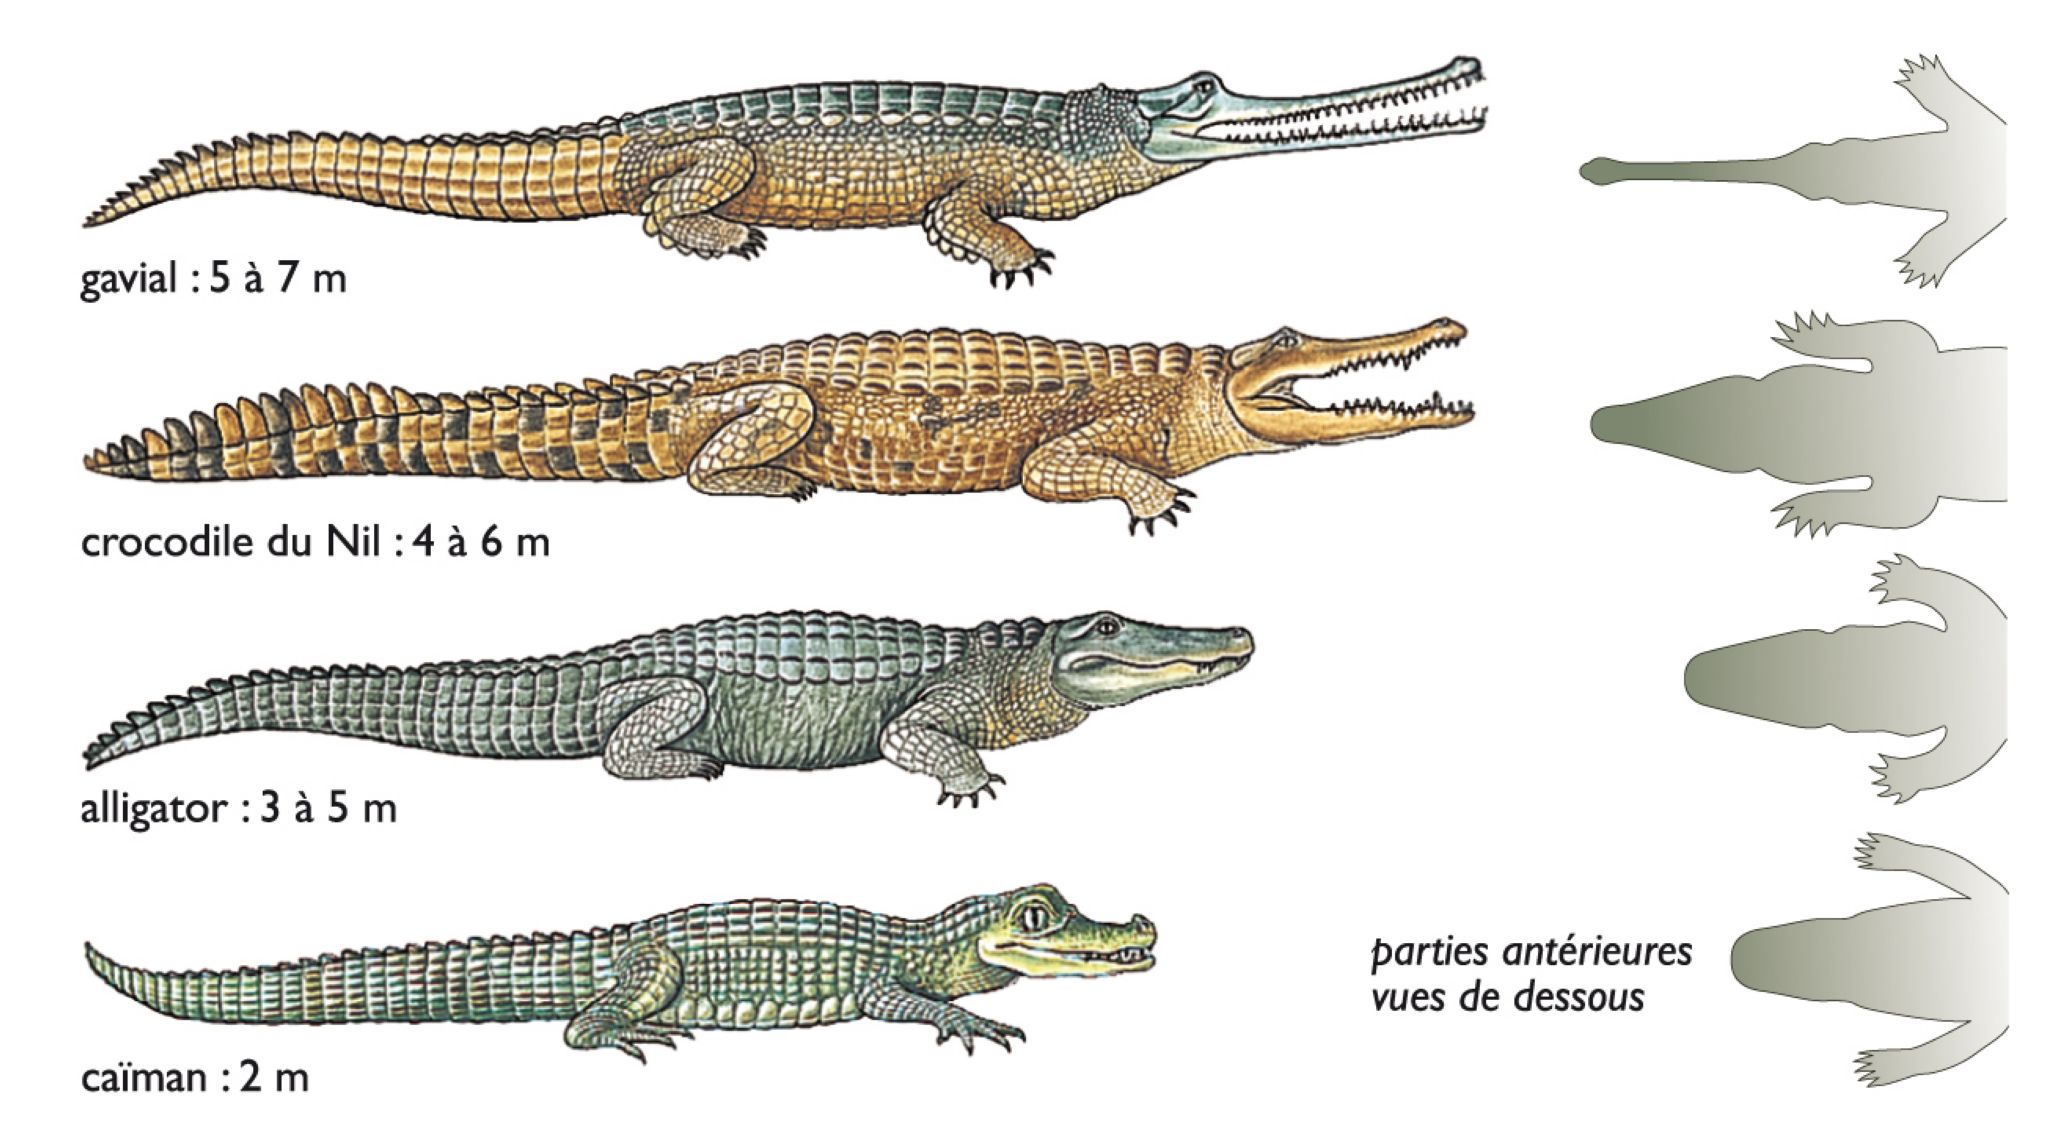 les différents reptiles de la famille du crocodile (crocodiliens)